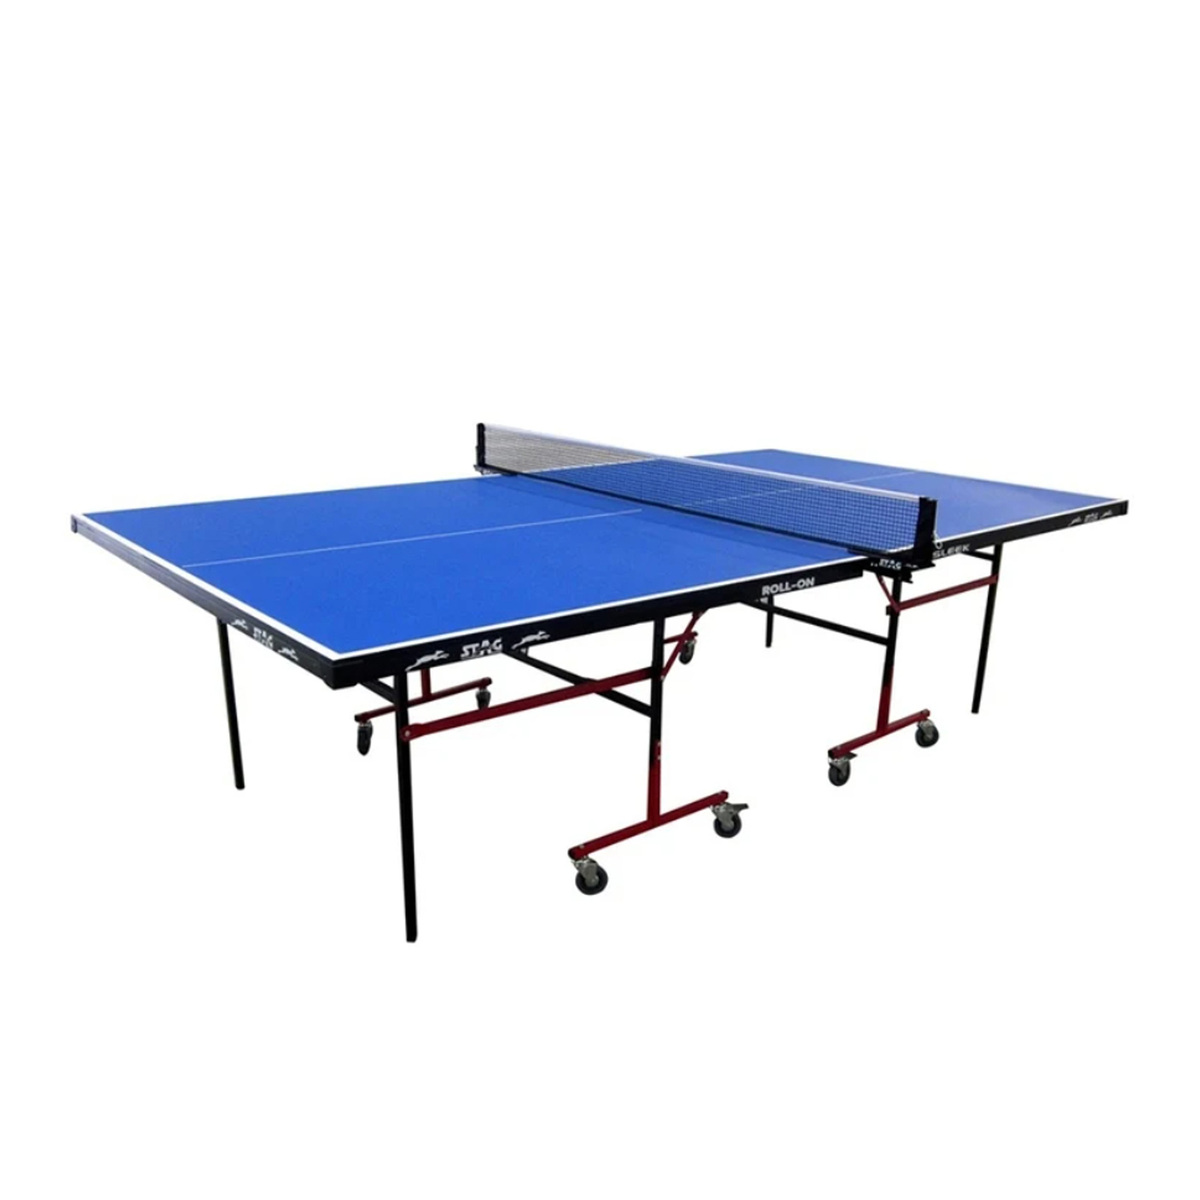 ستاج طاولة تنس قابلة للطي للاستخدام الخارجي مع سطح مدمج، 25 × 40 ملم، أزرق/أسود، TTOU-40